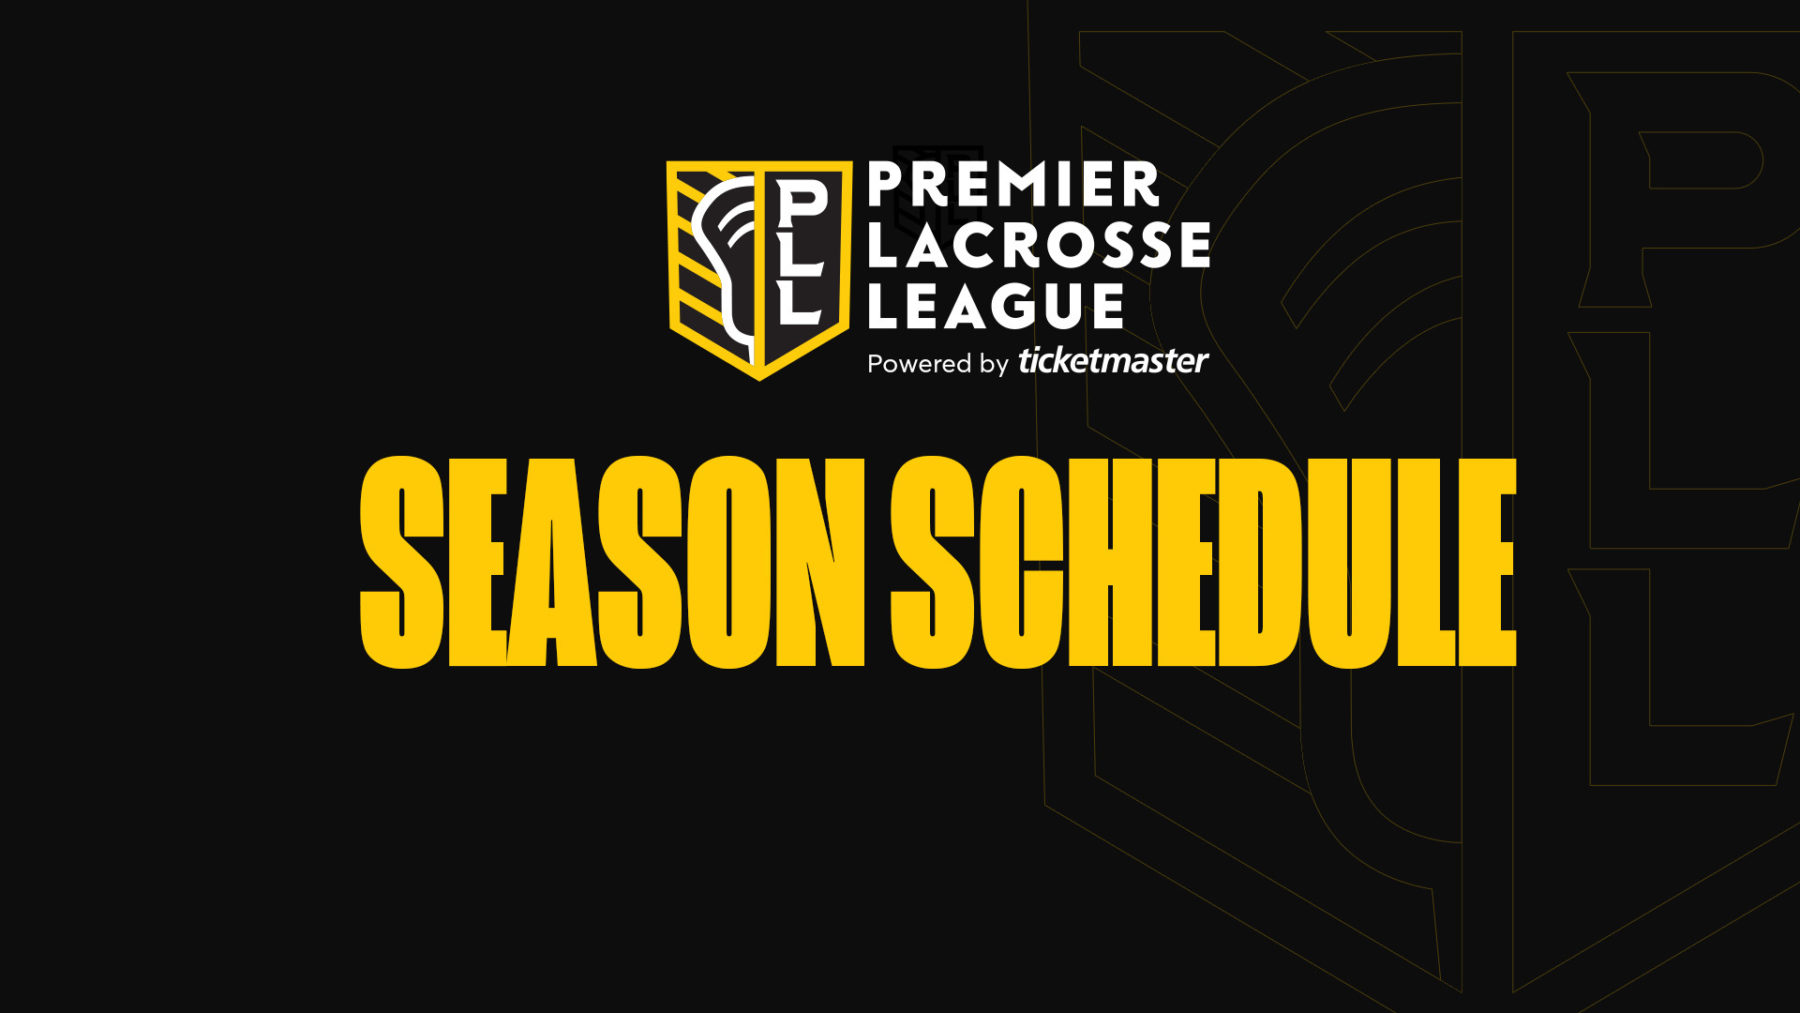 Premier Lacrosse League Schedule - Premier Lacrosse League